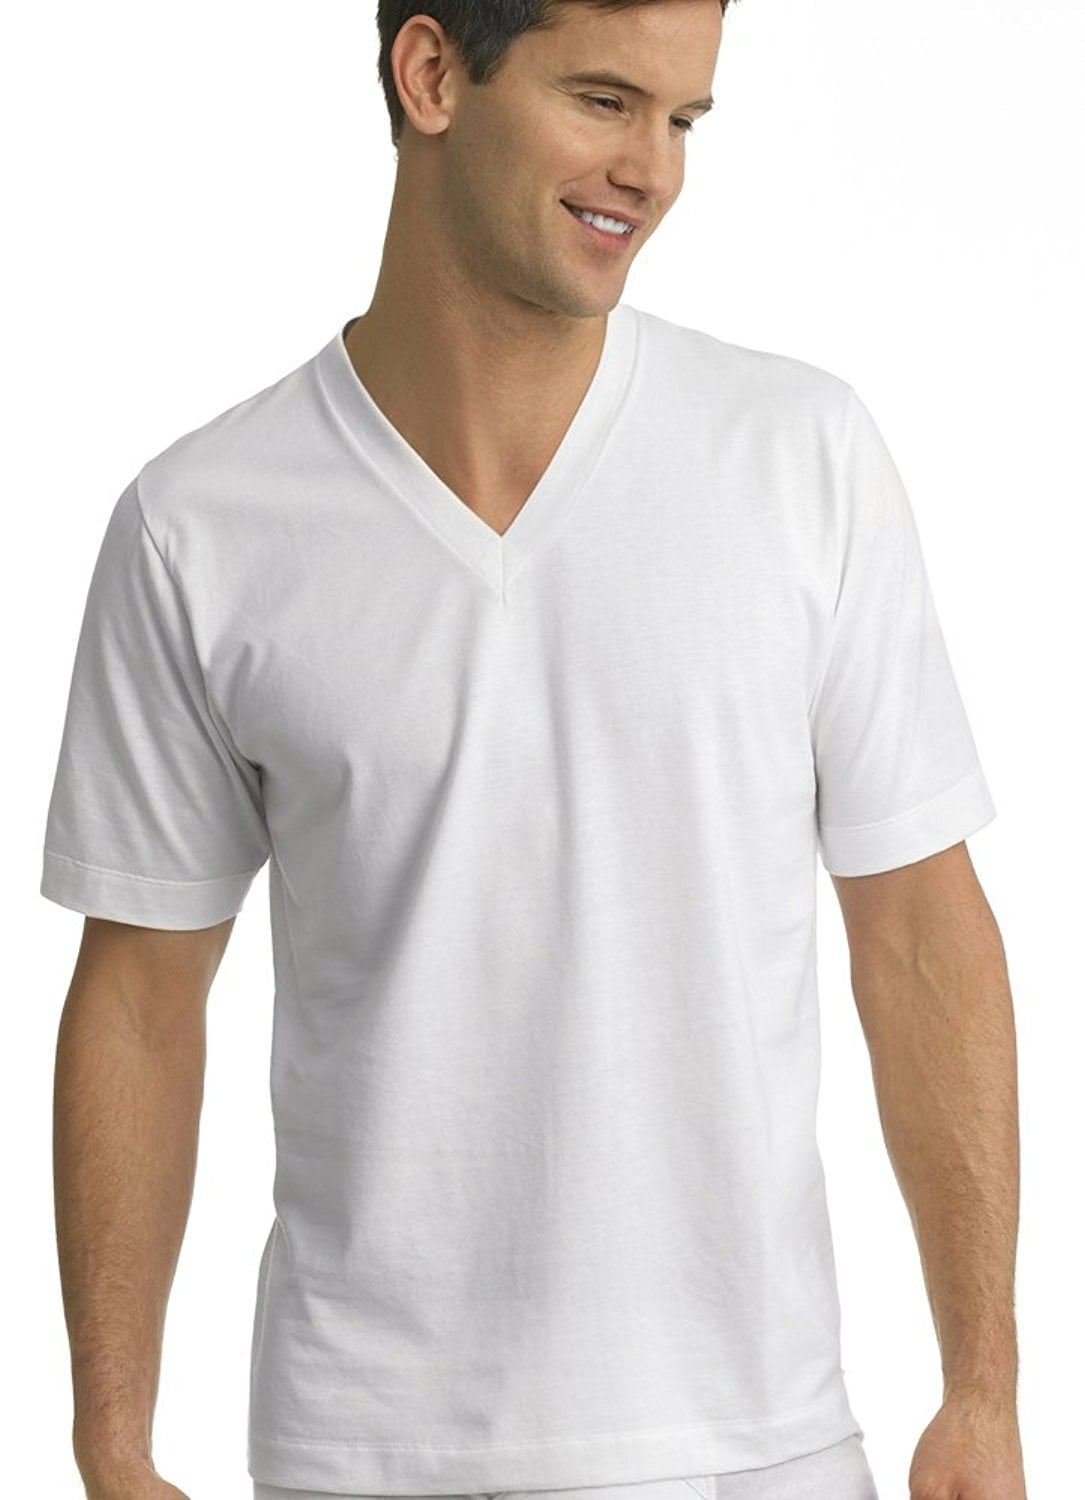 White Jockey Modern Classic V Neck T Shirt 2 Pack